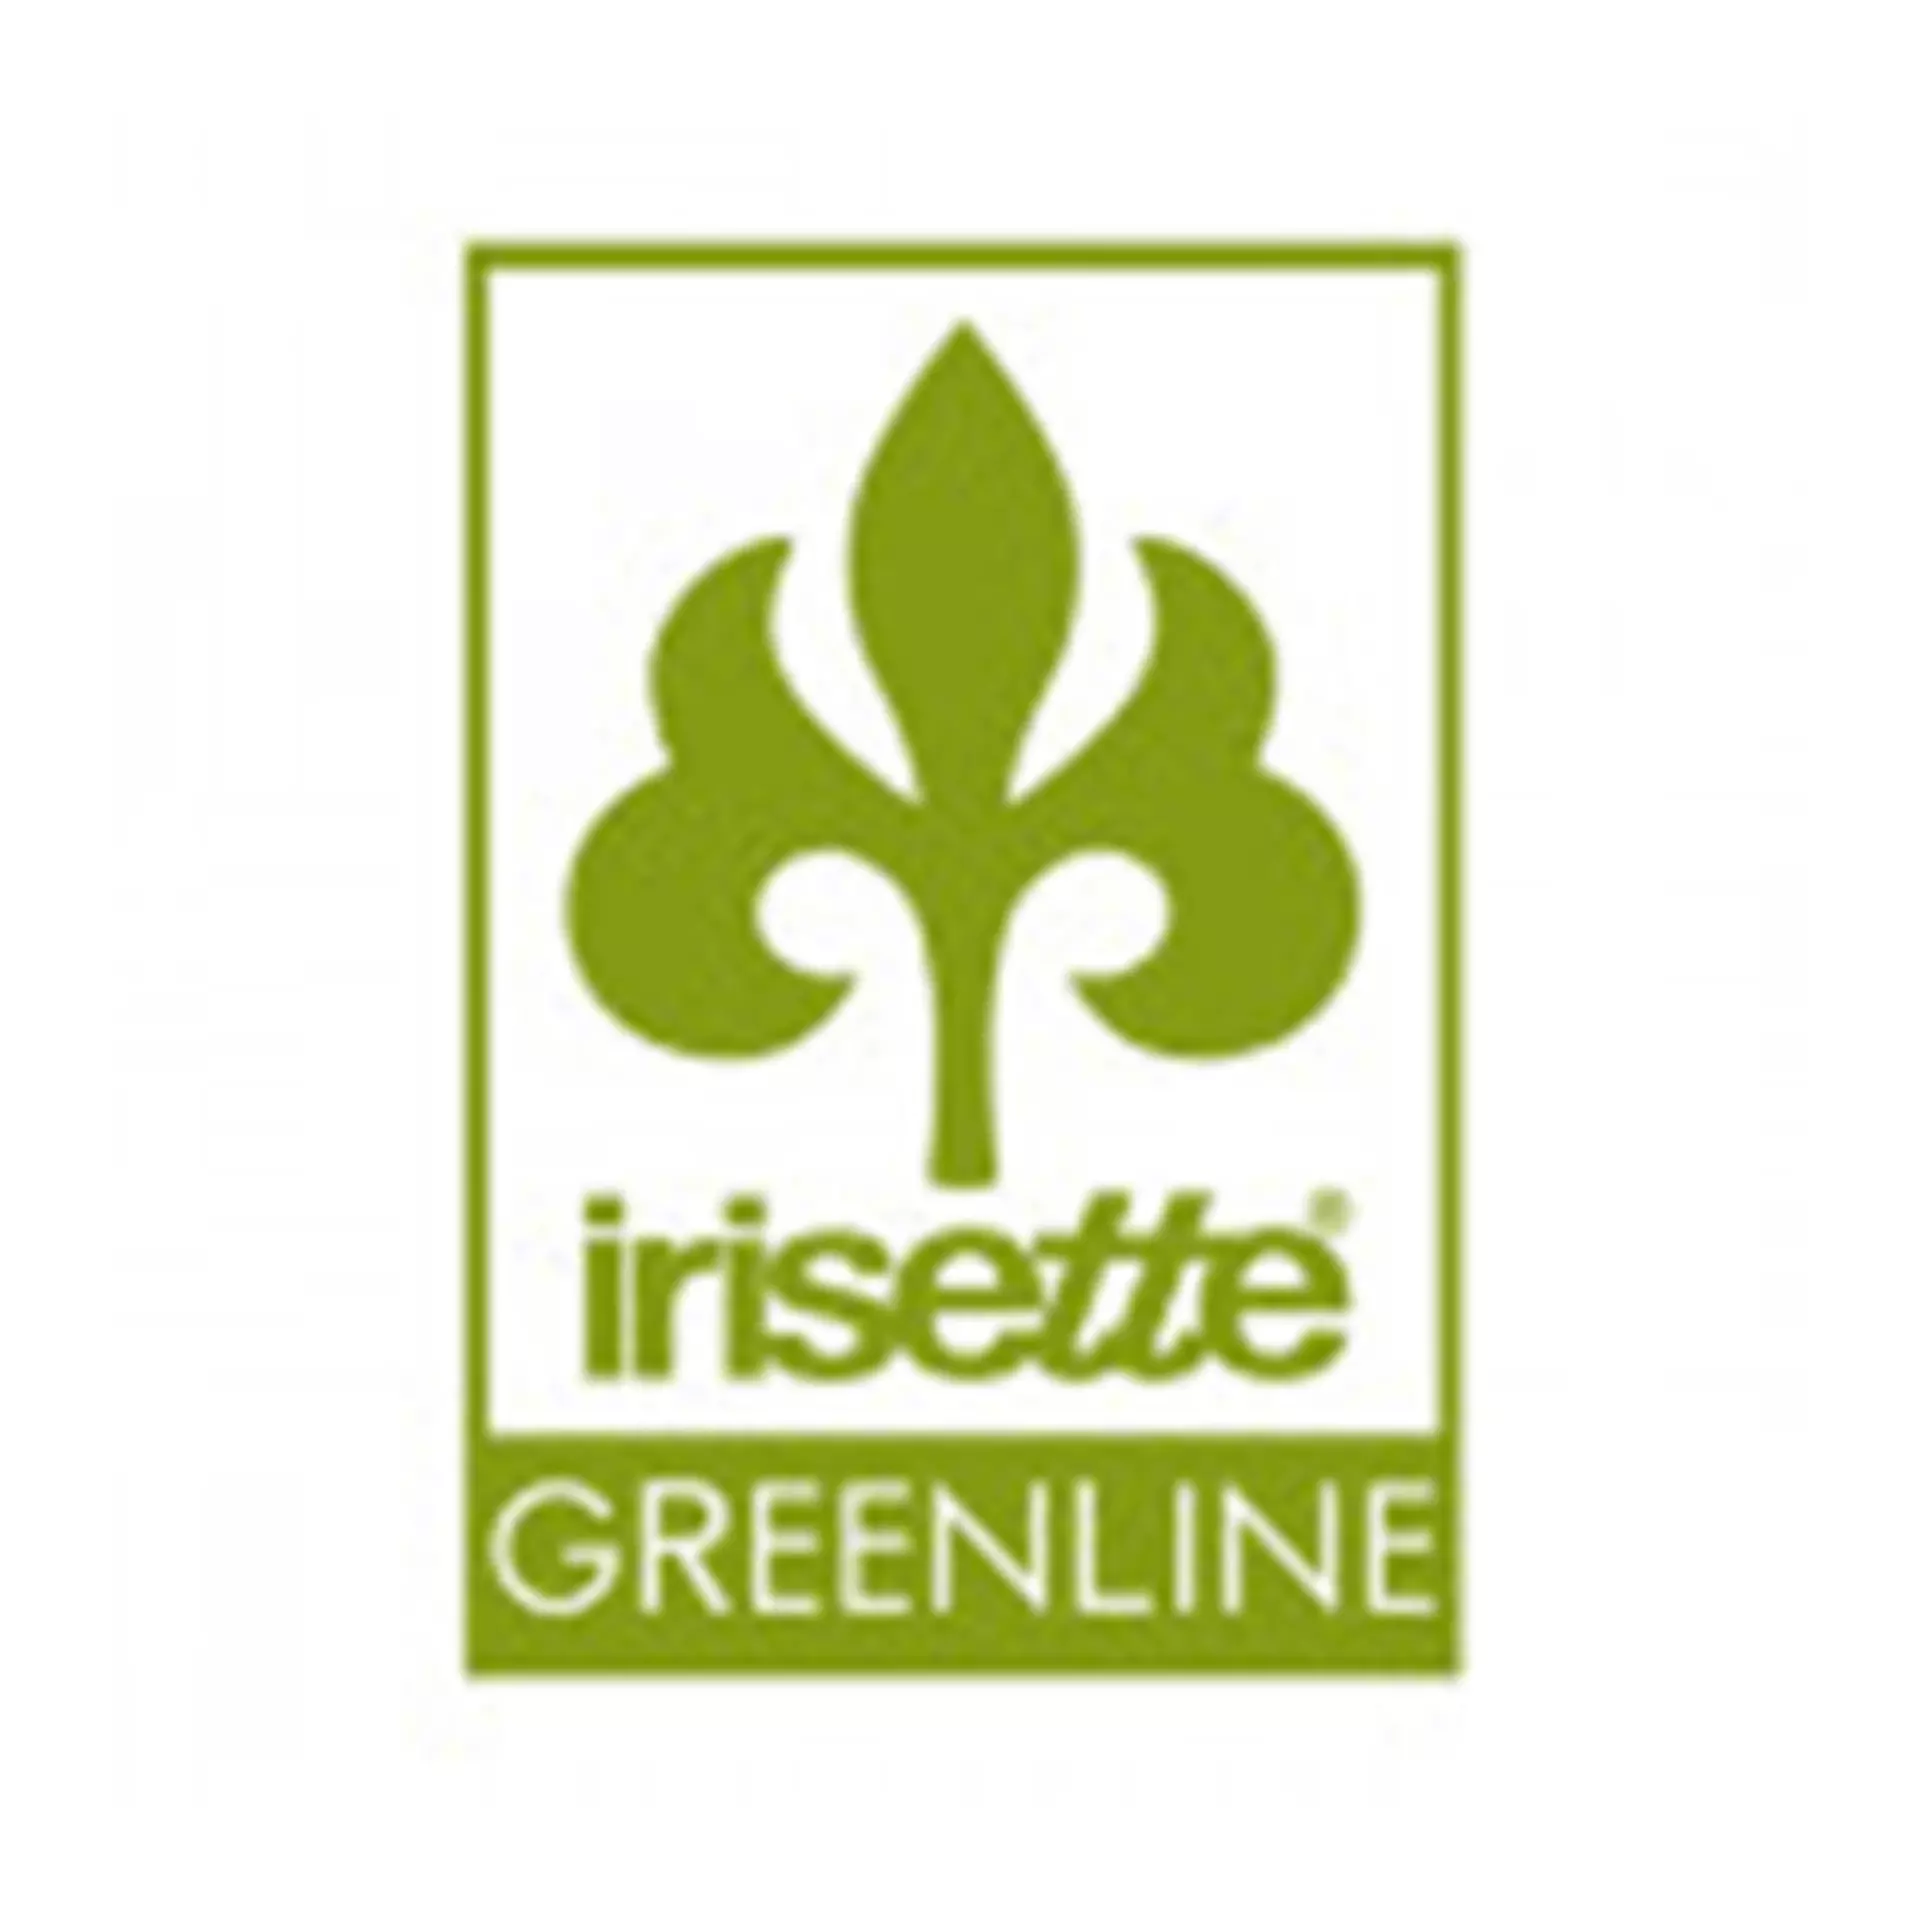 Irisette Greenline Heimtextilien bei Möbel Inhofer